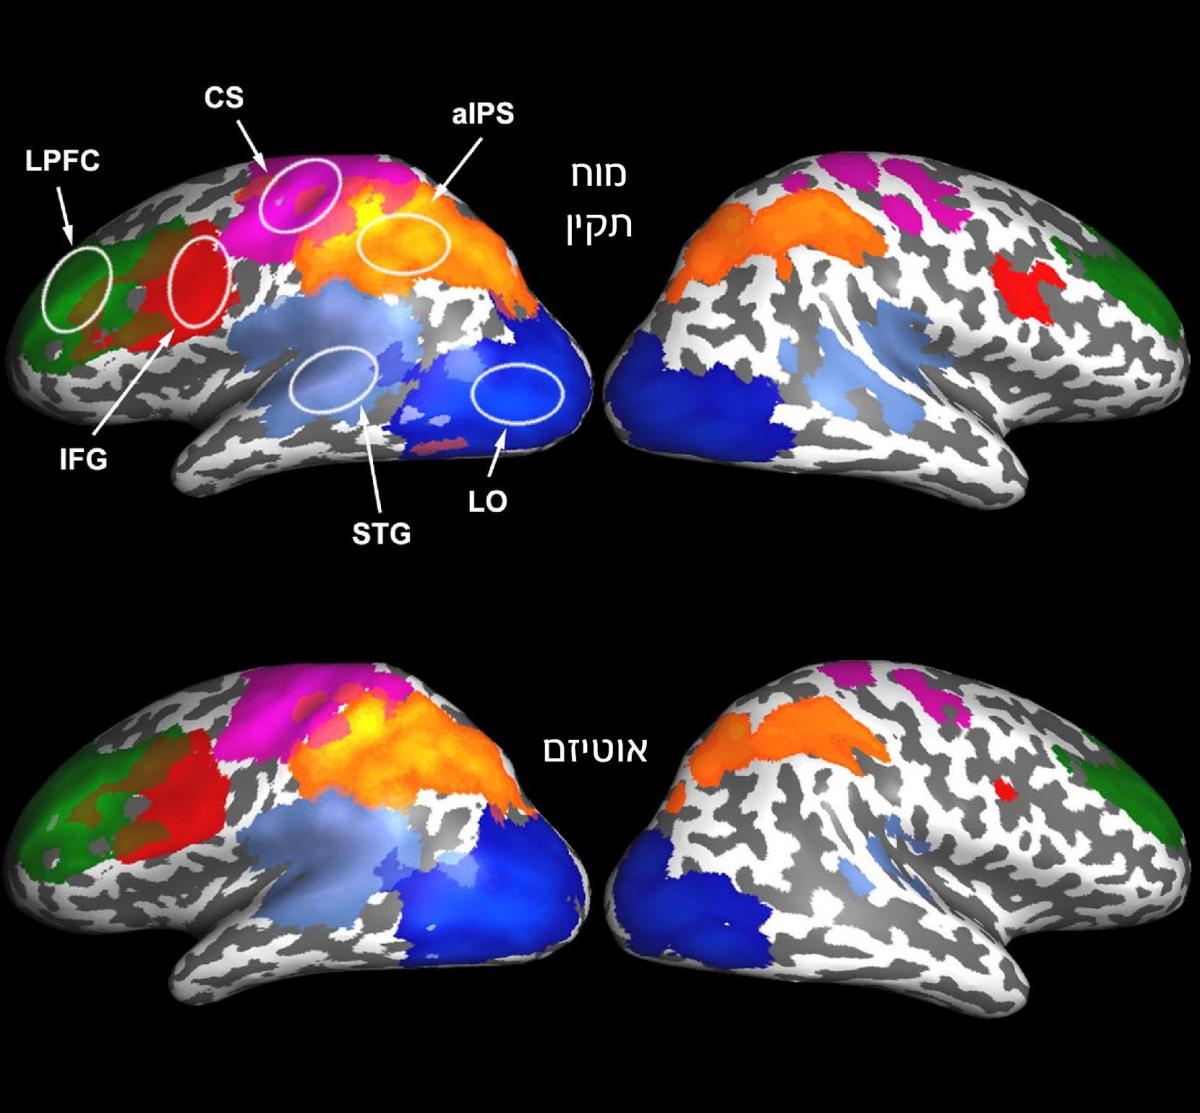 בפעוטות בעלי התפתחות מוח תקינה (למעלה) נראתה רמה גבוהה של פעילות מוחית מסונכרנת, ואילו בפעוטות הסובלים מאוטיזם נראתה פעילות מסונכרנת חלשה באזורי מוח הקשורים בשפה ובתקשורת (באדום ובכחול)